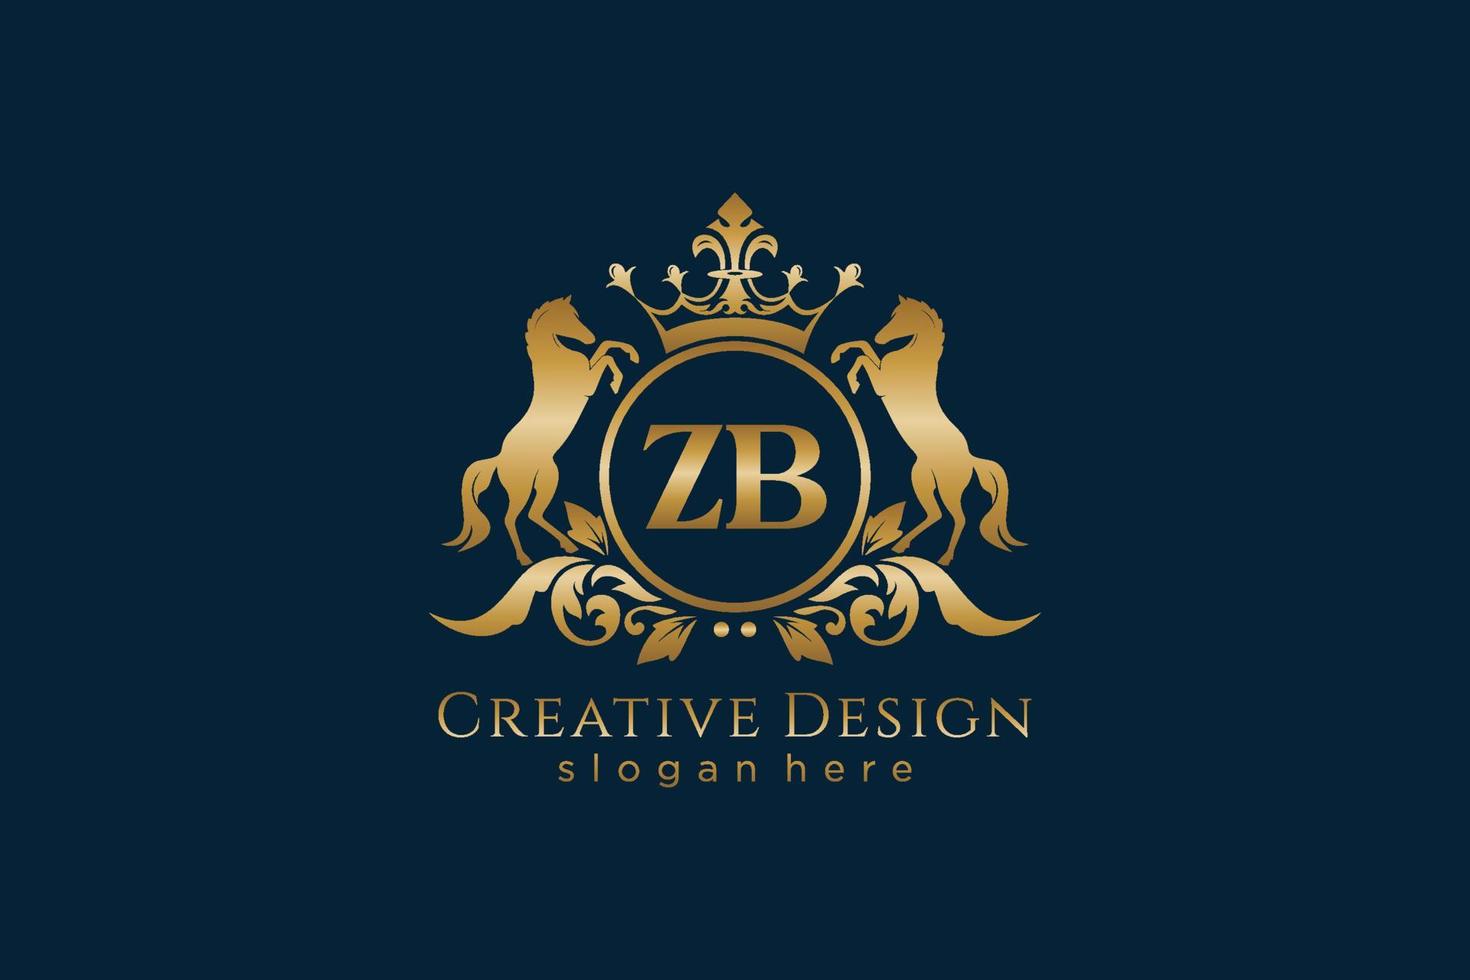 crête dorée rétro initiale zb avec cercle et deux chevaux, modèle de badge avec volutes et couronne royale - parfait pour les projets de marque de luxe vecteur